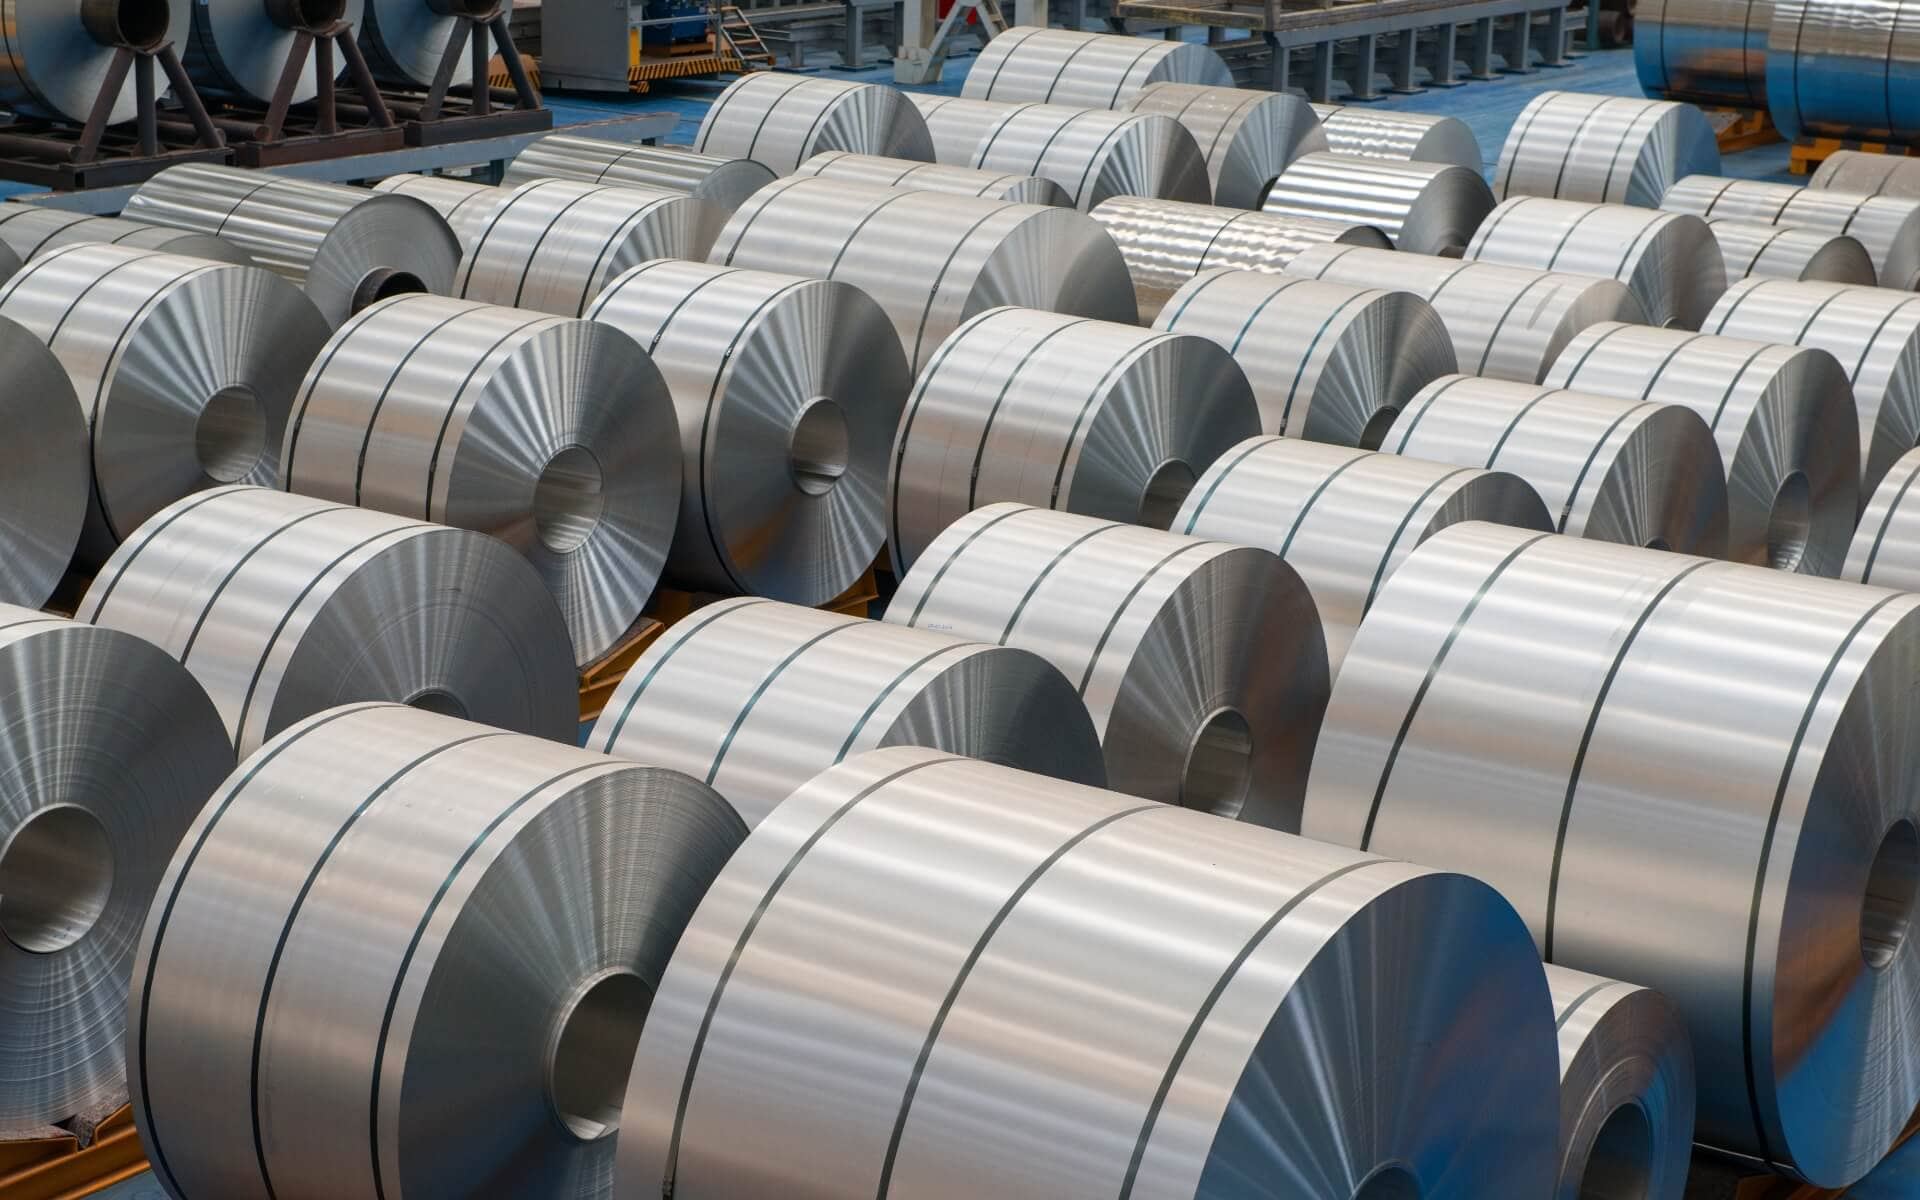 Güney Kore'nin sıcak haddelenmiş çelik satışları Mayıs ayında artışa geçti